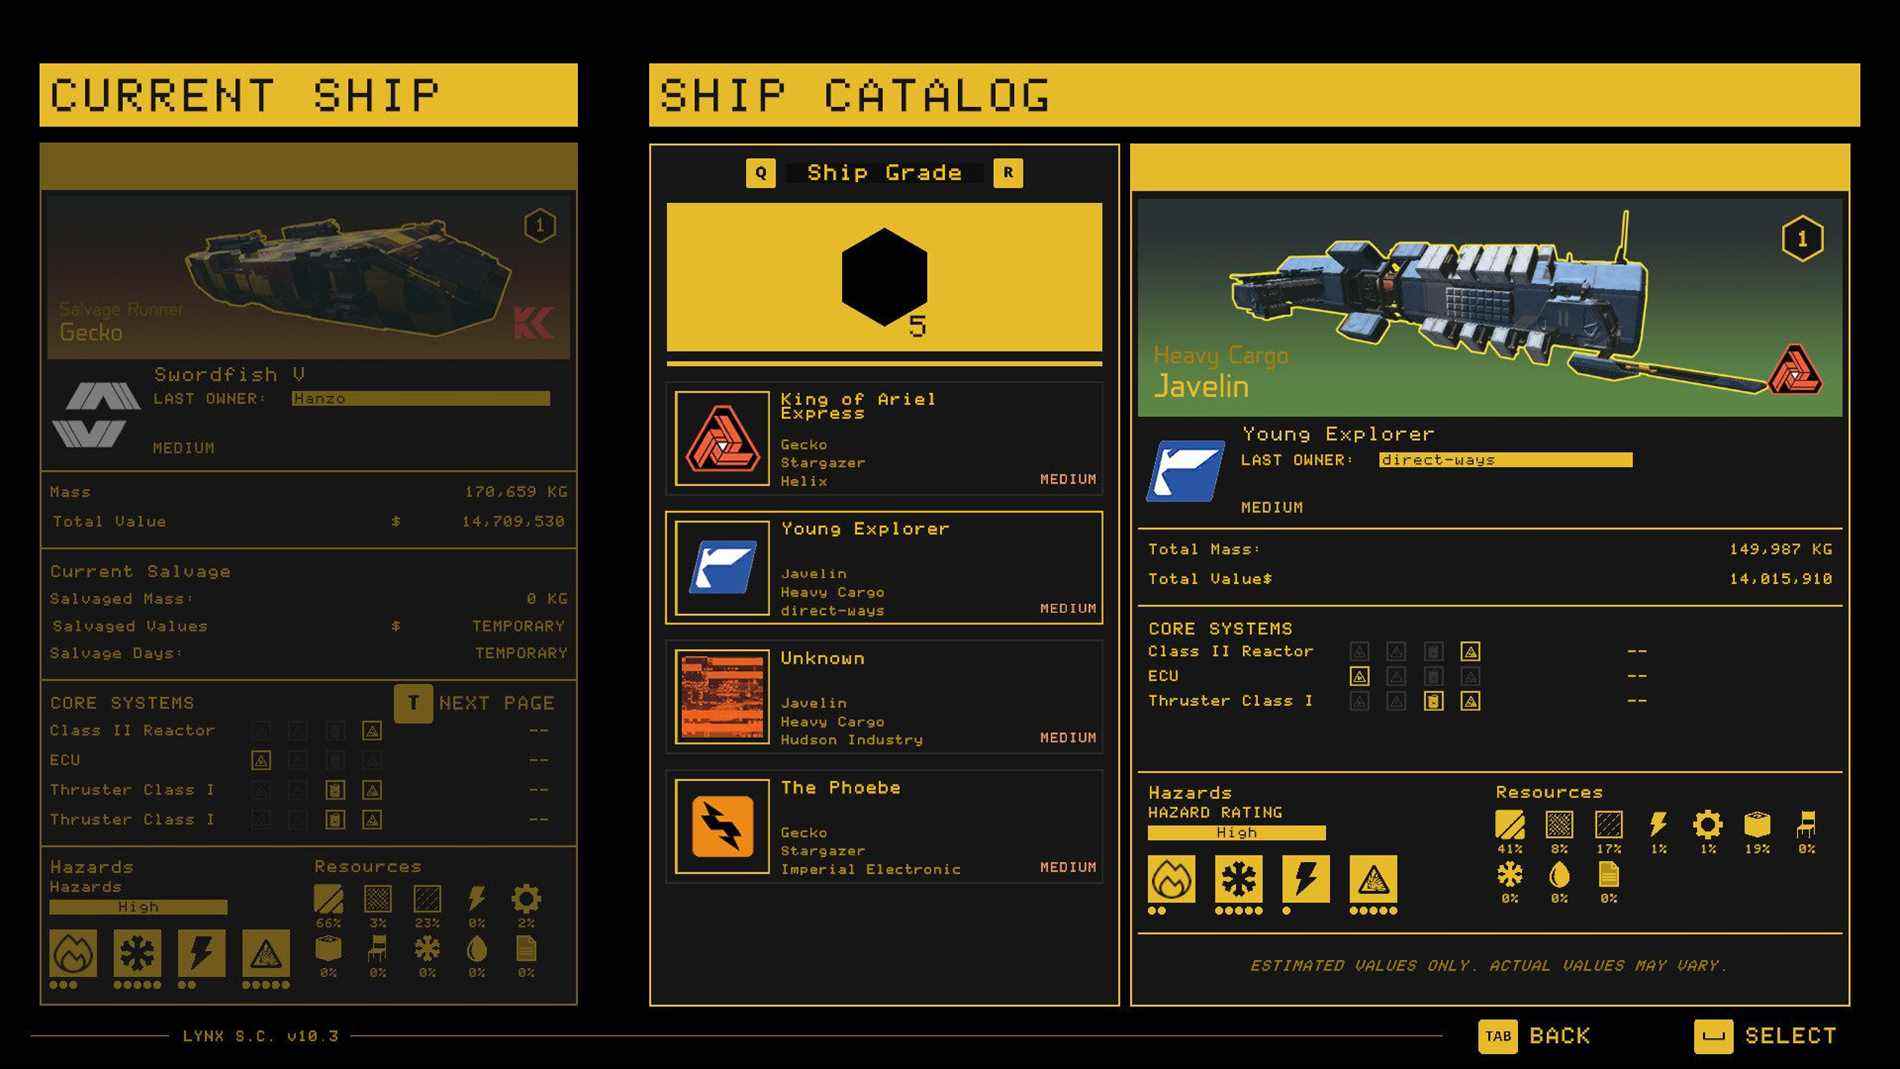 Hardspace : capture d'écran du catalogue de navires Shipbreaker